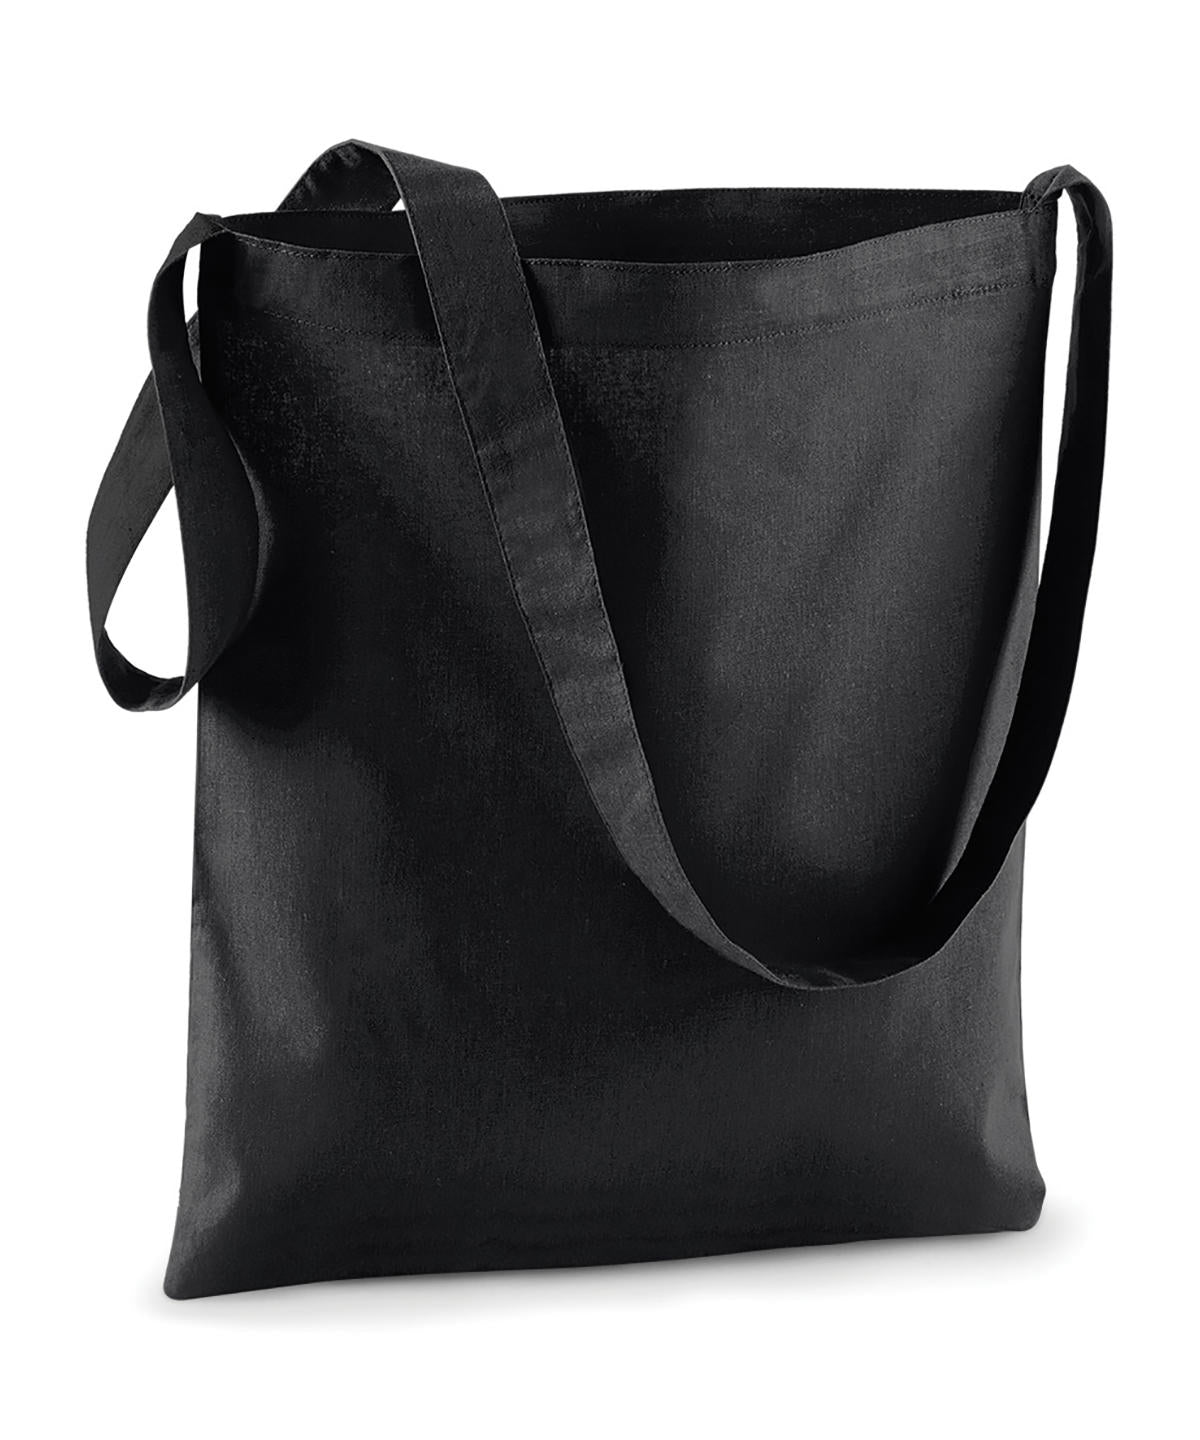 Töskur - Sling Bag For Life